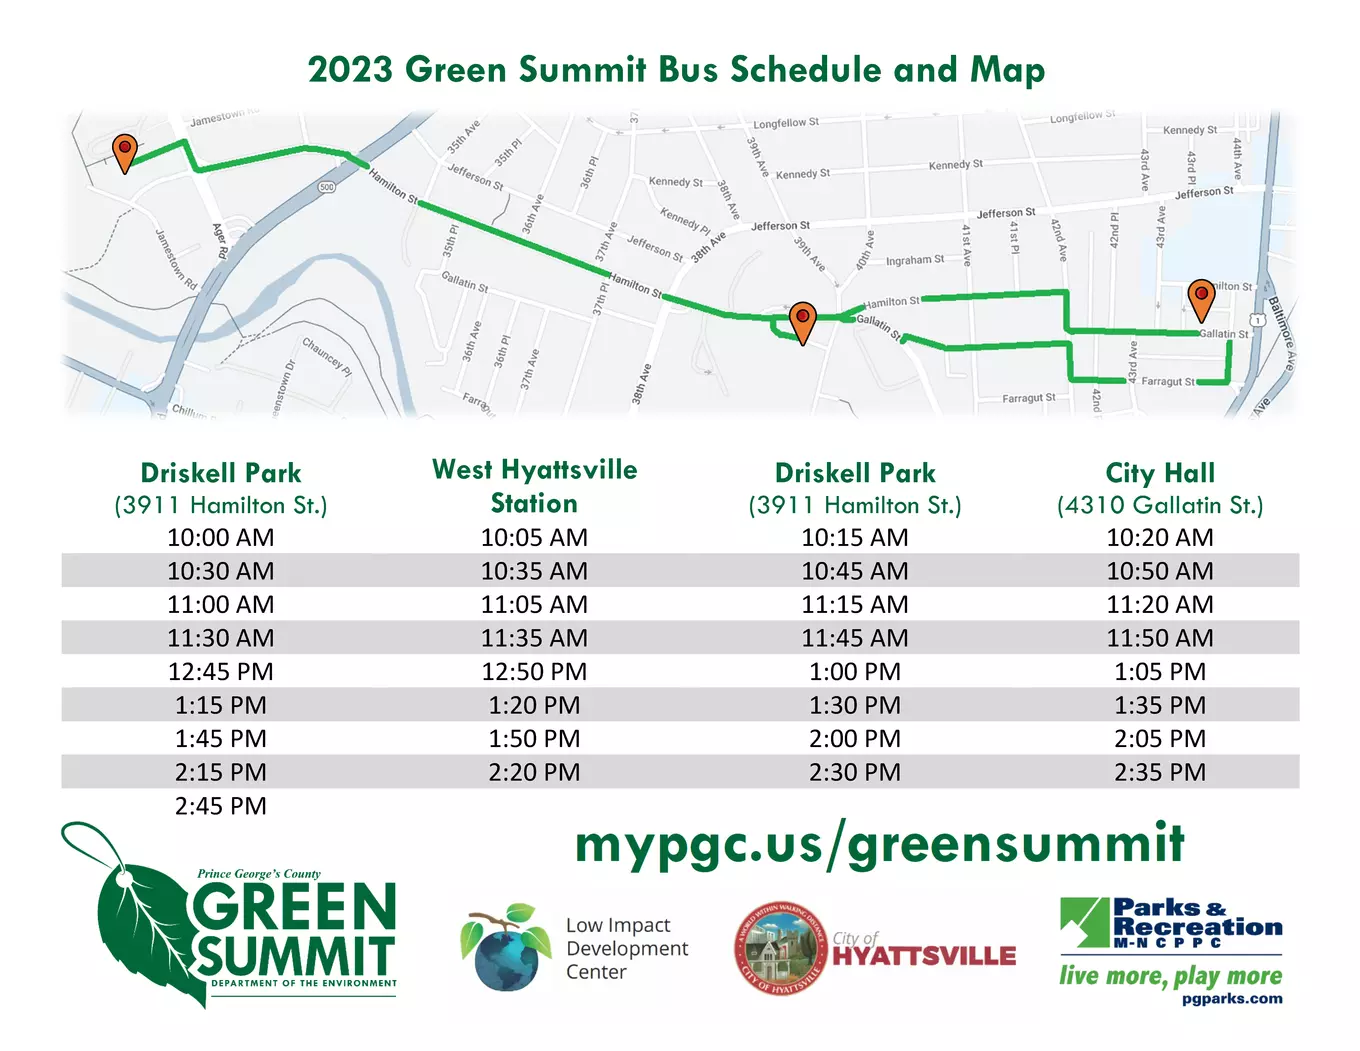 DoE Green Summit 2023 Bus Shuttle